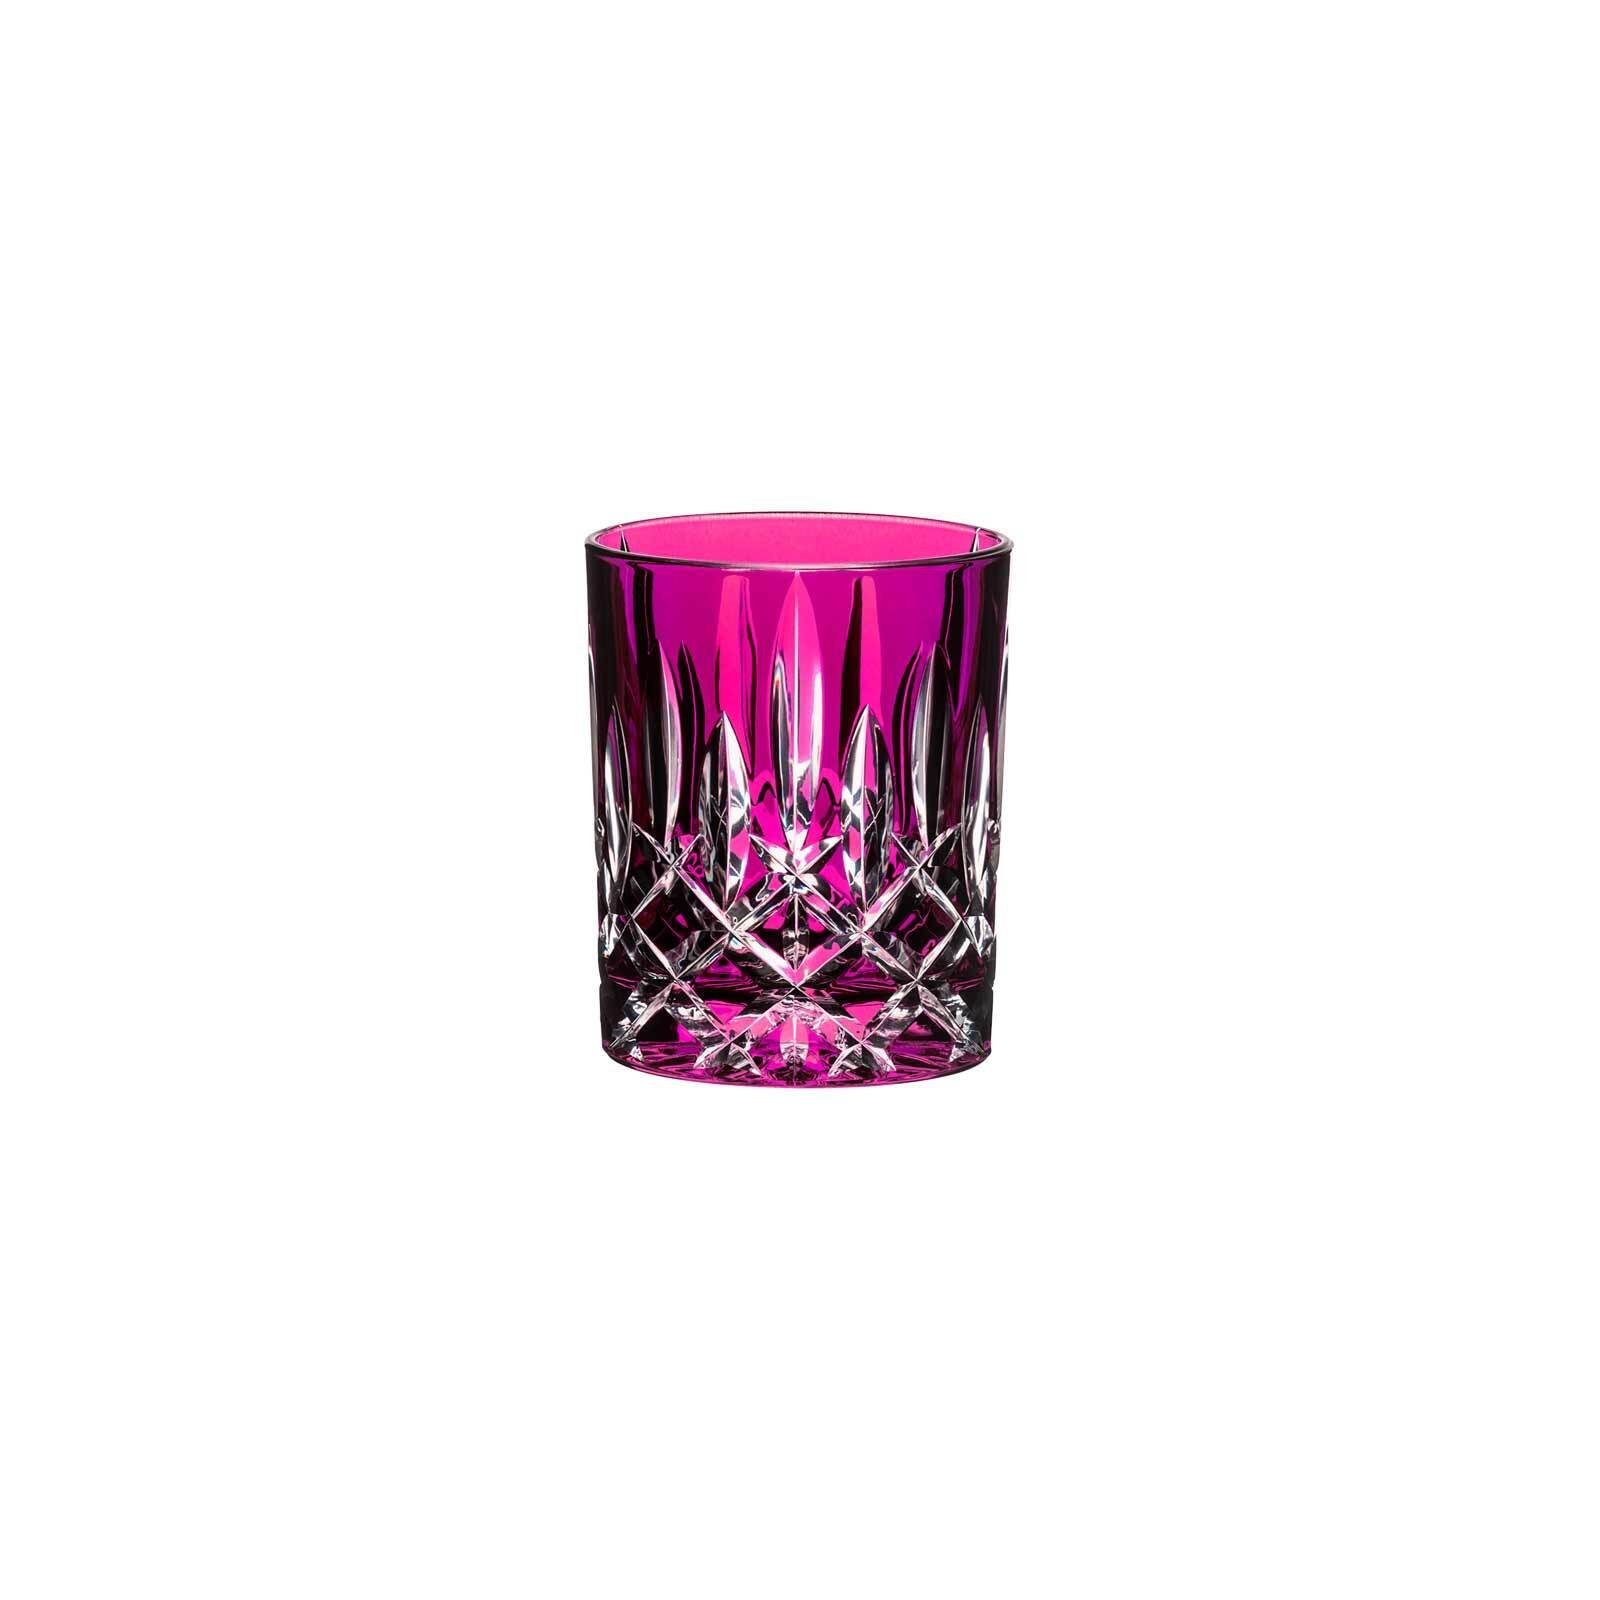 RIEDEL Glas Whiskyglas Laudon Whiskyglas 295 ml, Glas Pink